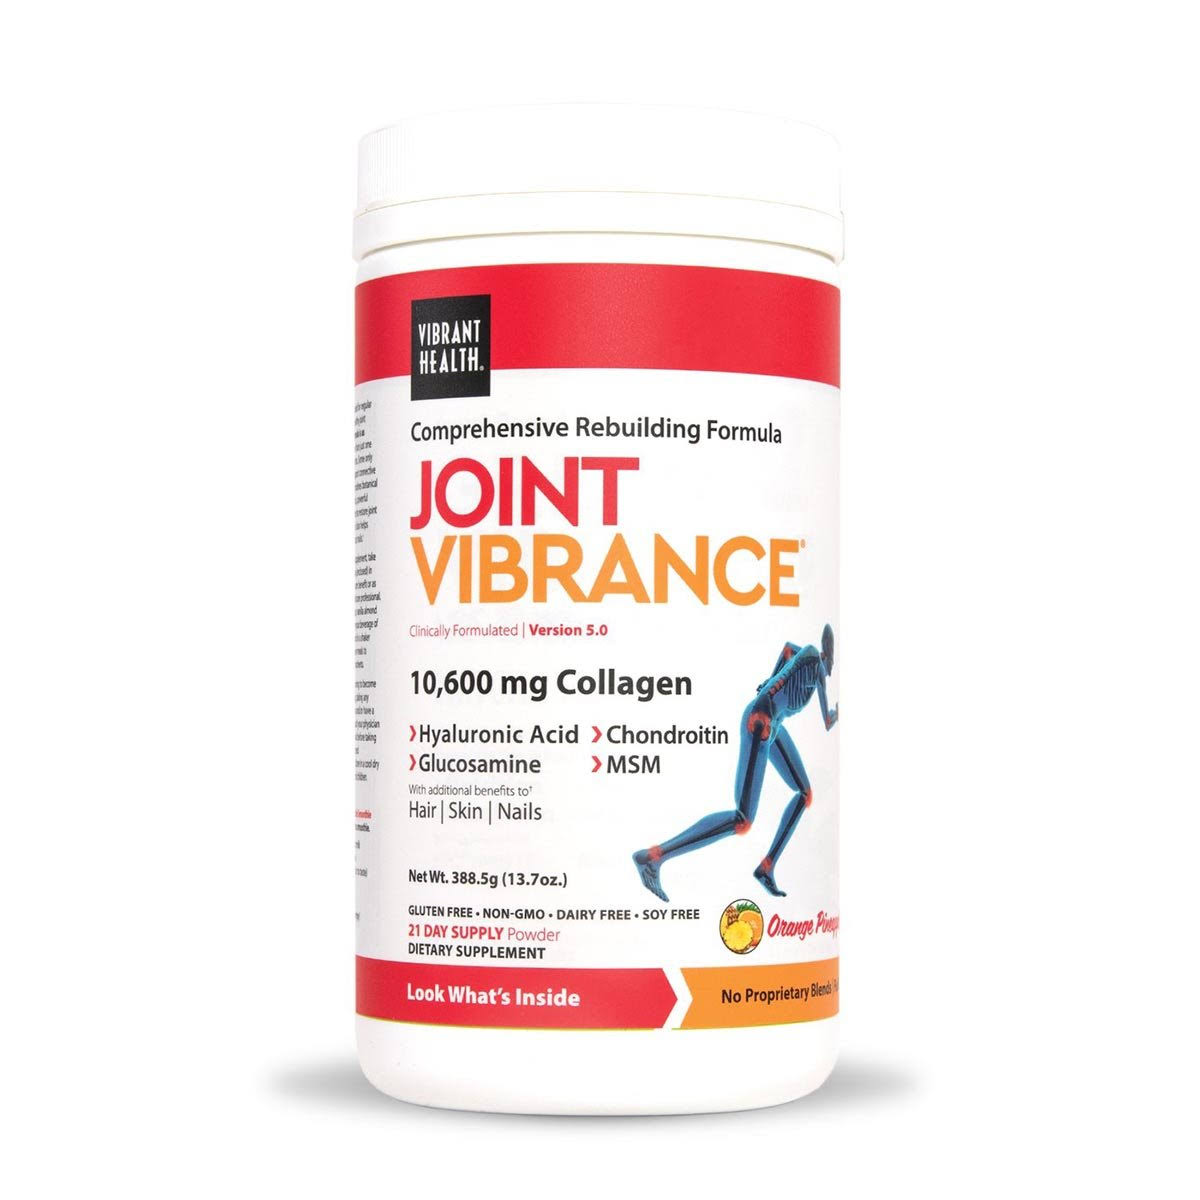 Vibrant Health Joint Vibrance - 12.96 oz